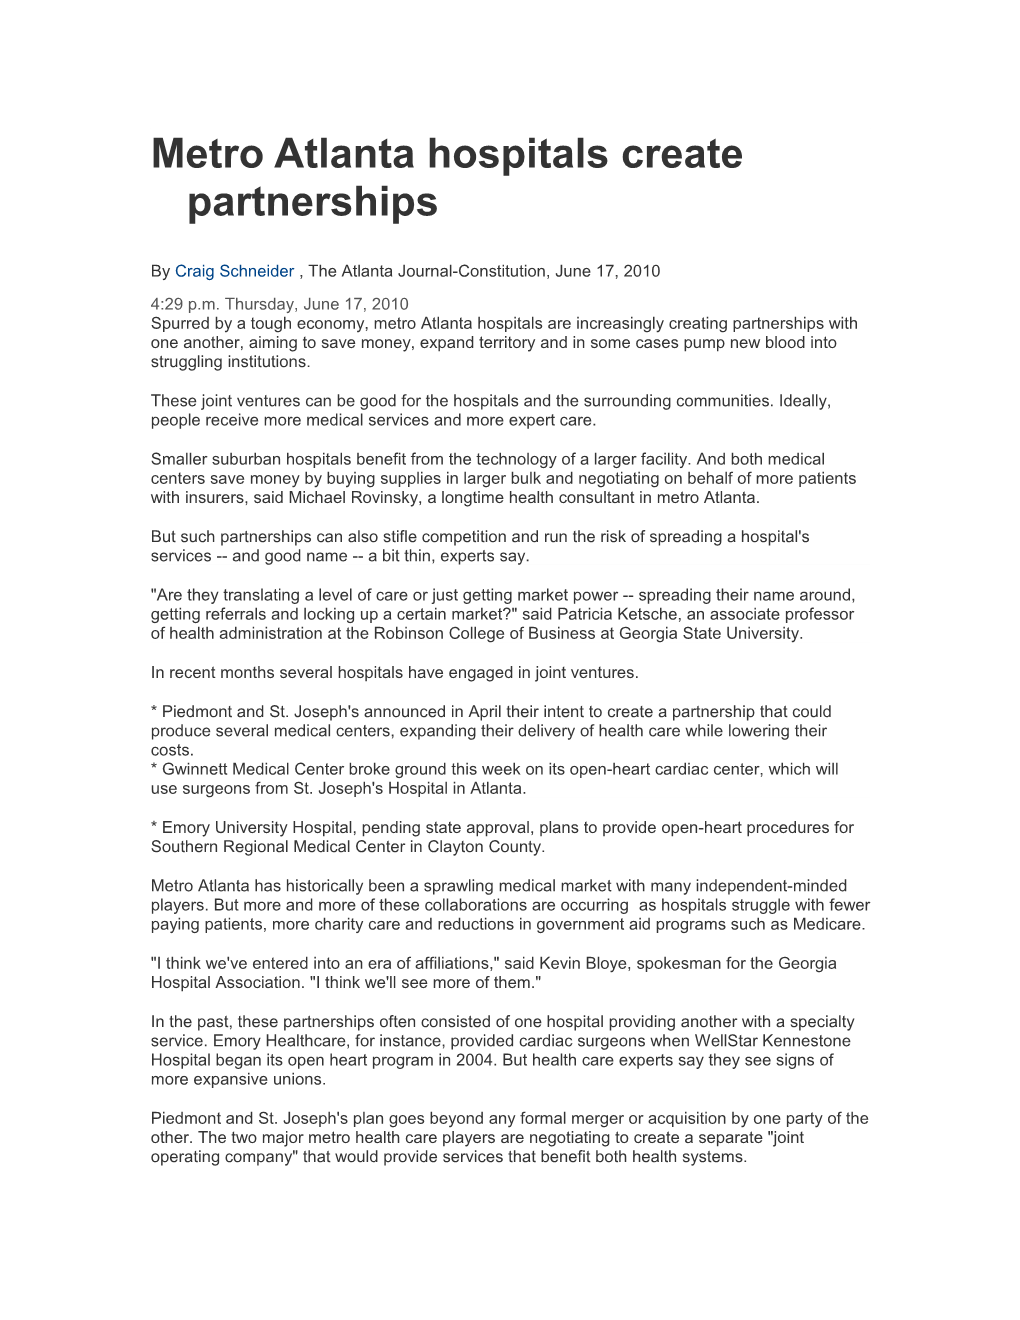 Metro Atlanta Hospitals Create Partnerships